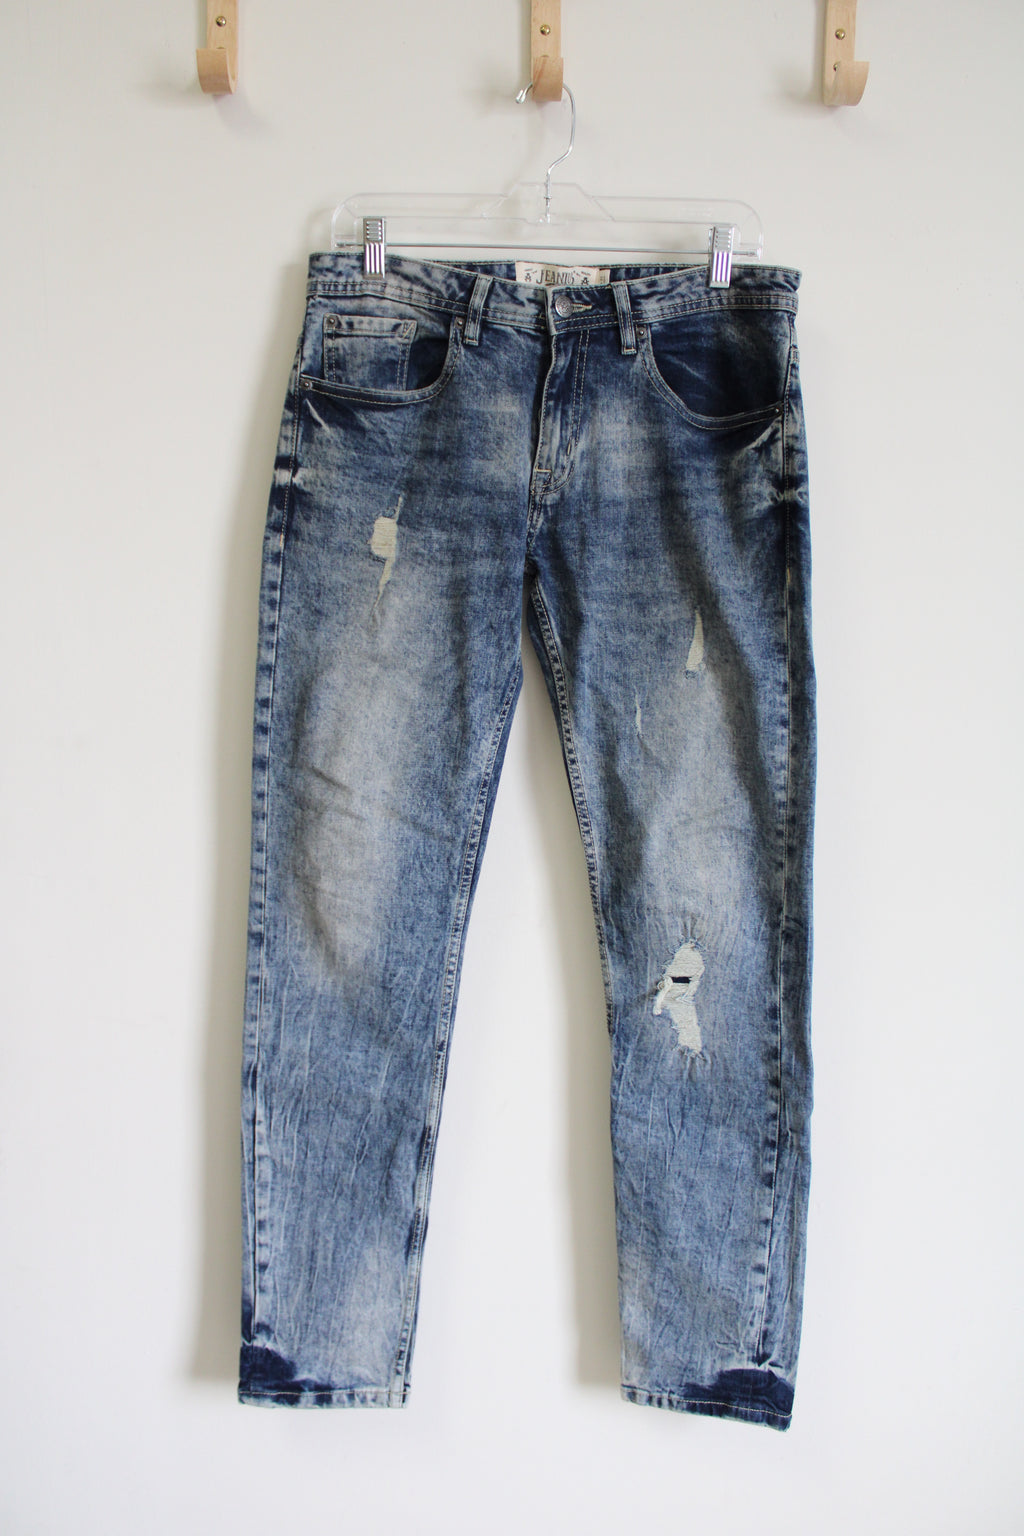 Jeanius Academiks Distressed Skinny Jeans | 30X32